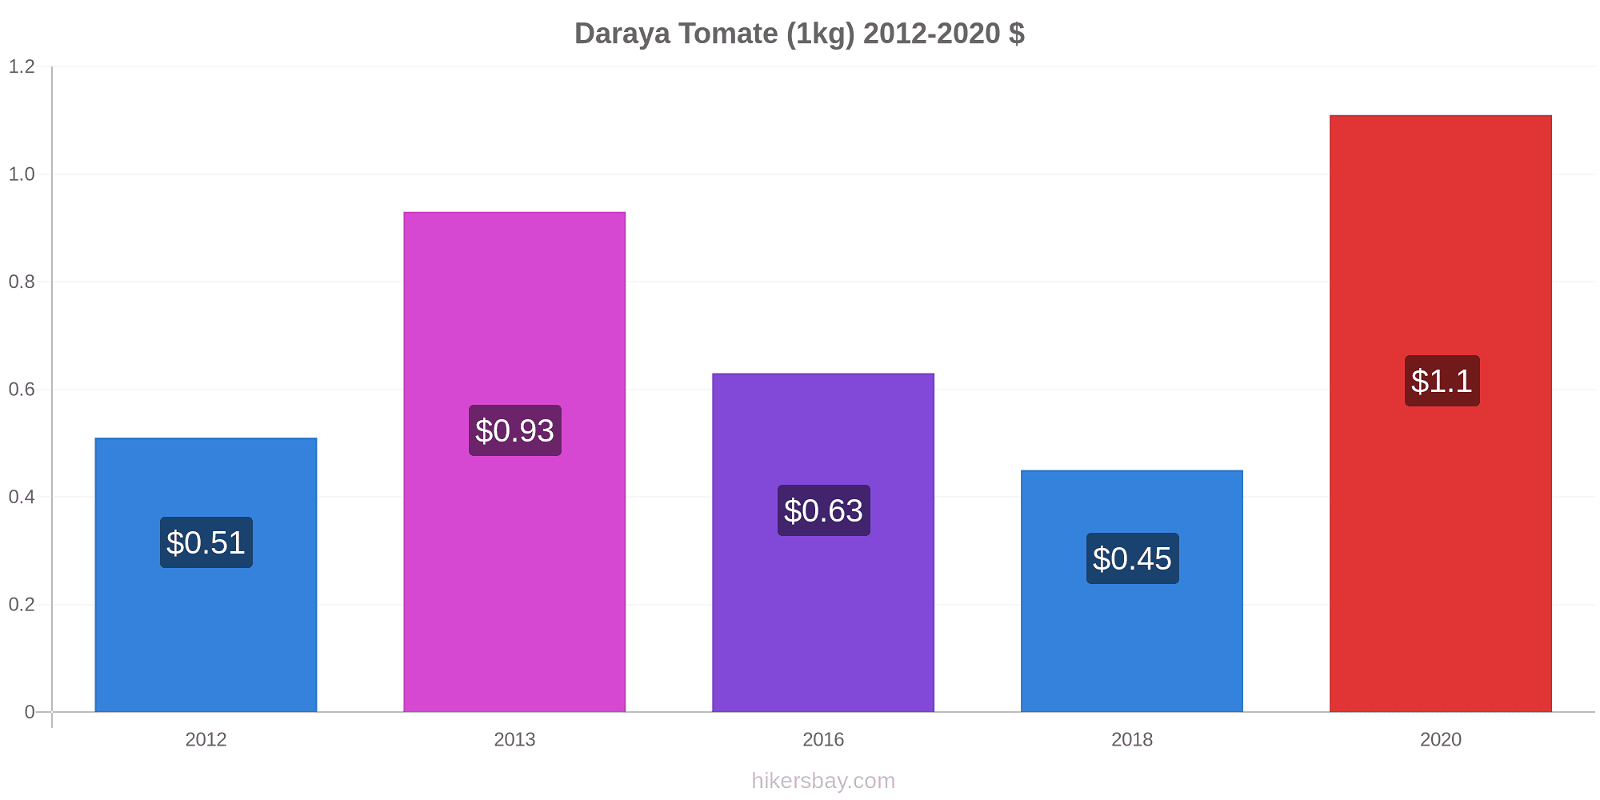 Daraya changements de prix Tomate (1kg) hikersbay.com